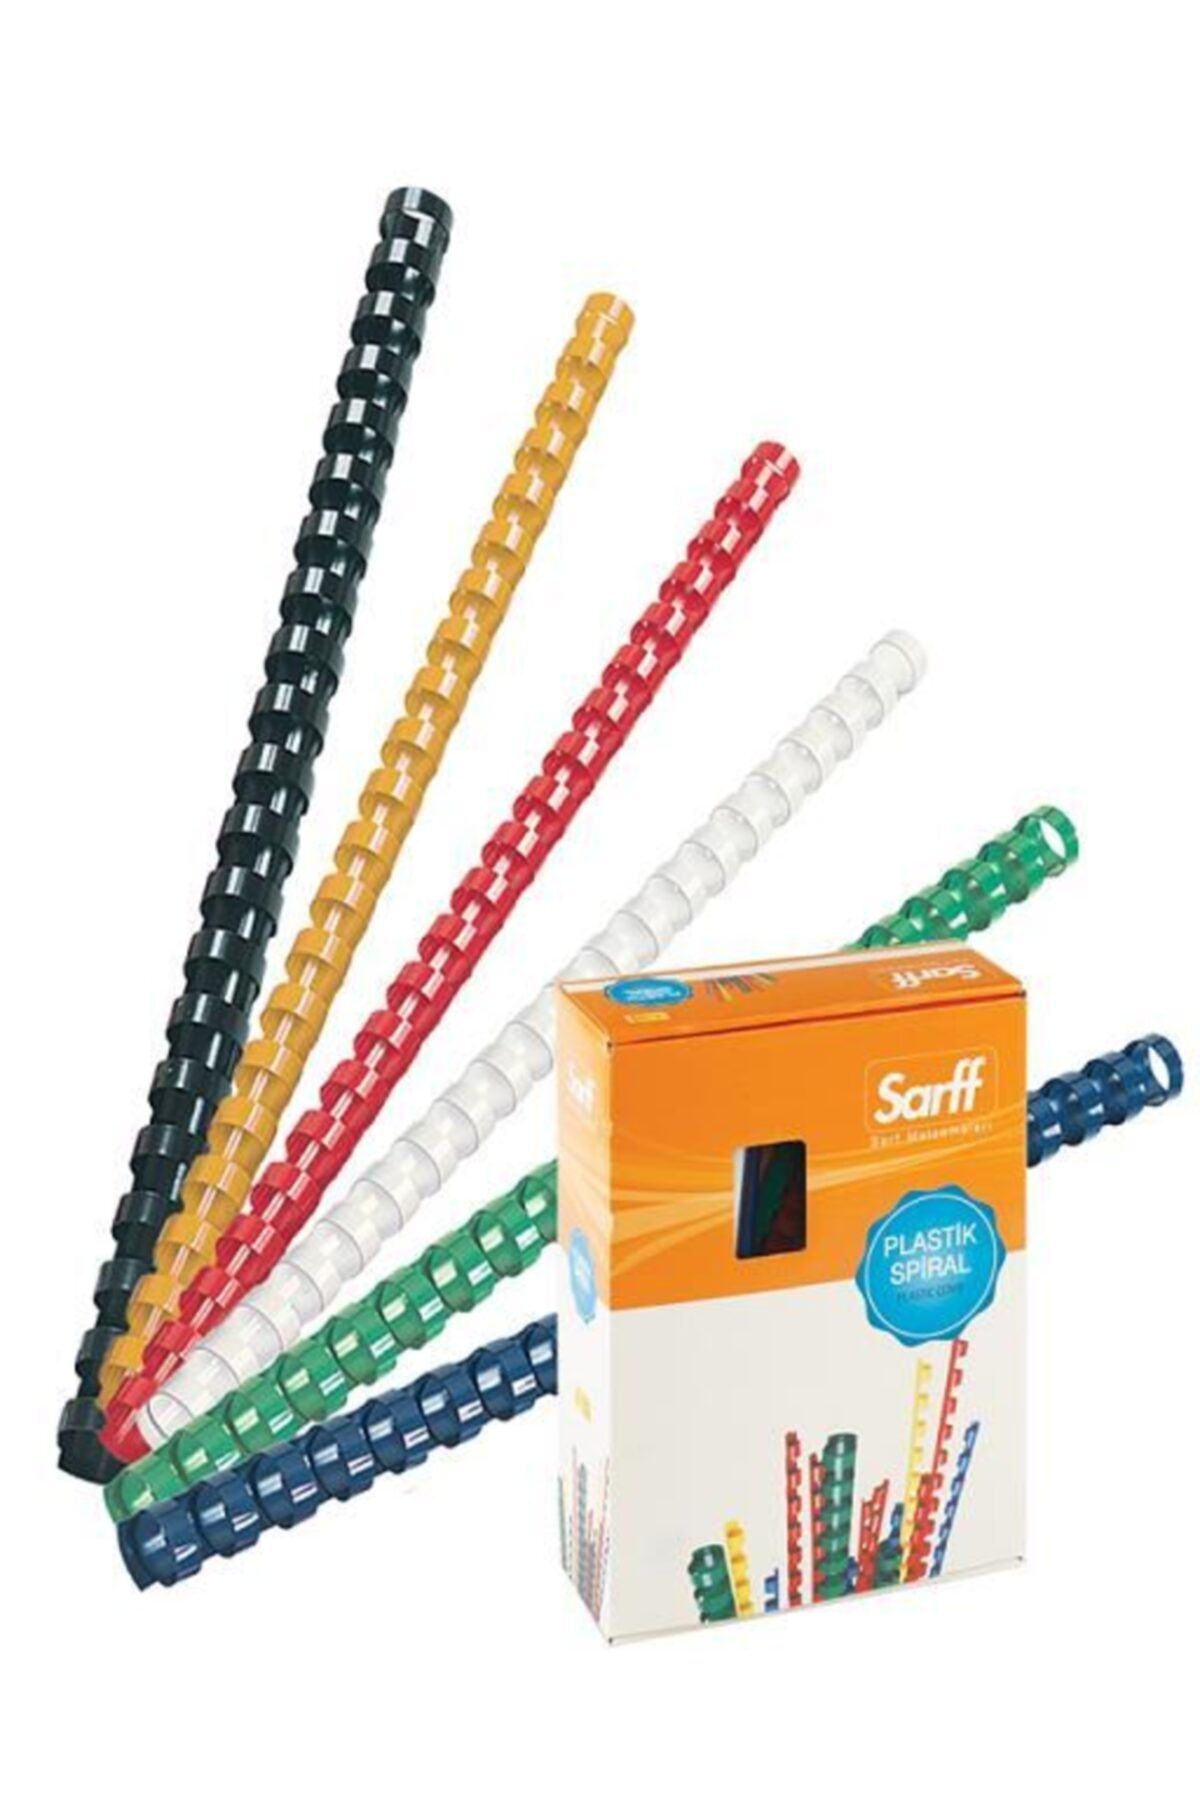 SARFF Plastik Spiral 22 Mm Beyaz 50 Li (1 Paket 50 Adet)